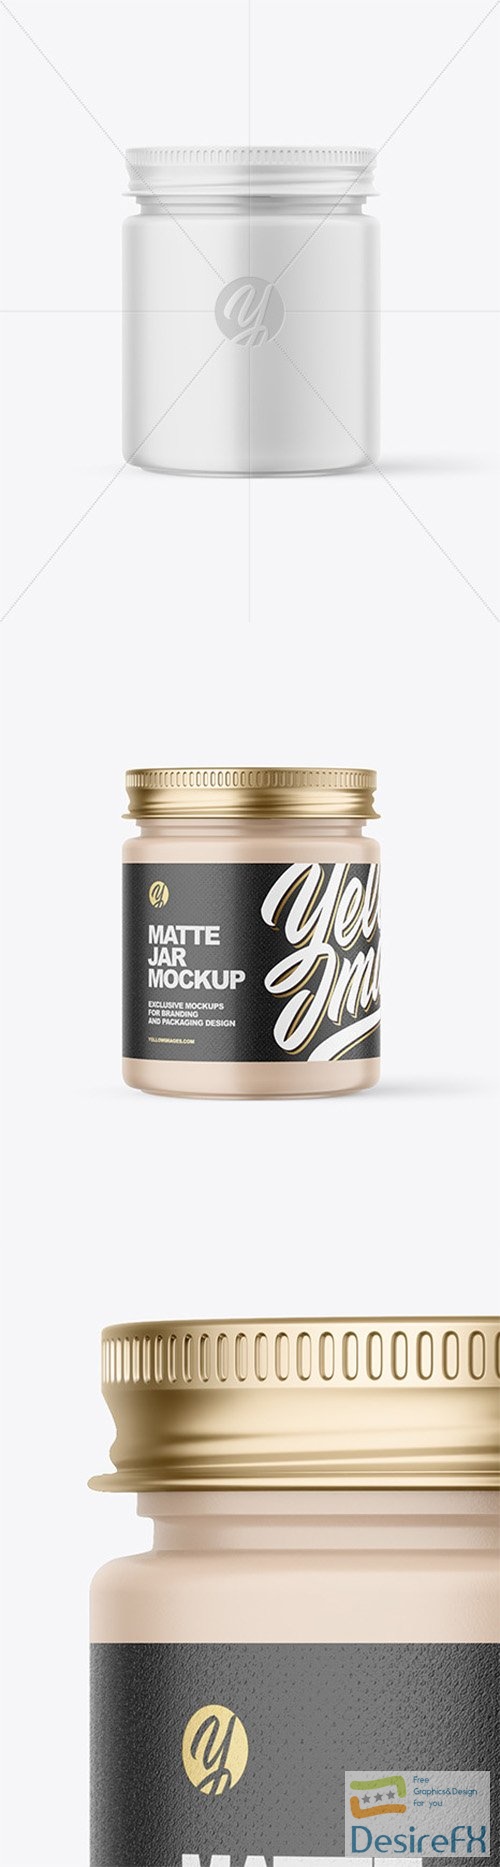 Matte Cosmetic Jar with Metallic Cap Mockup 80014 TIF